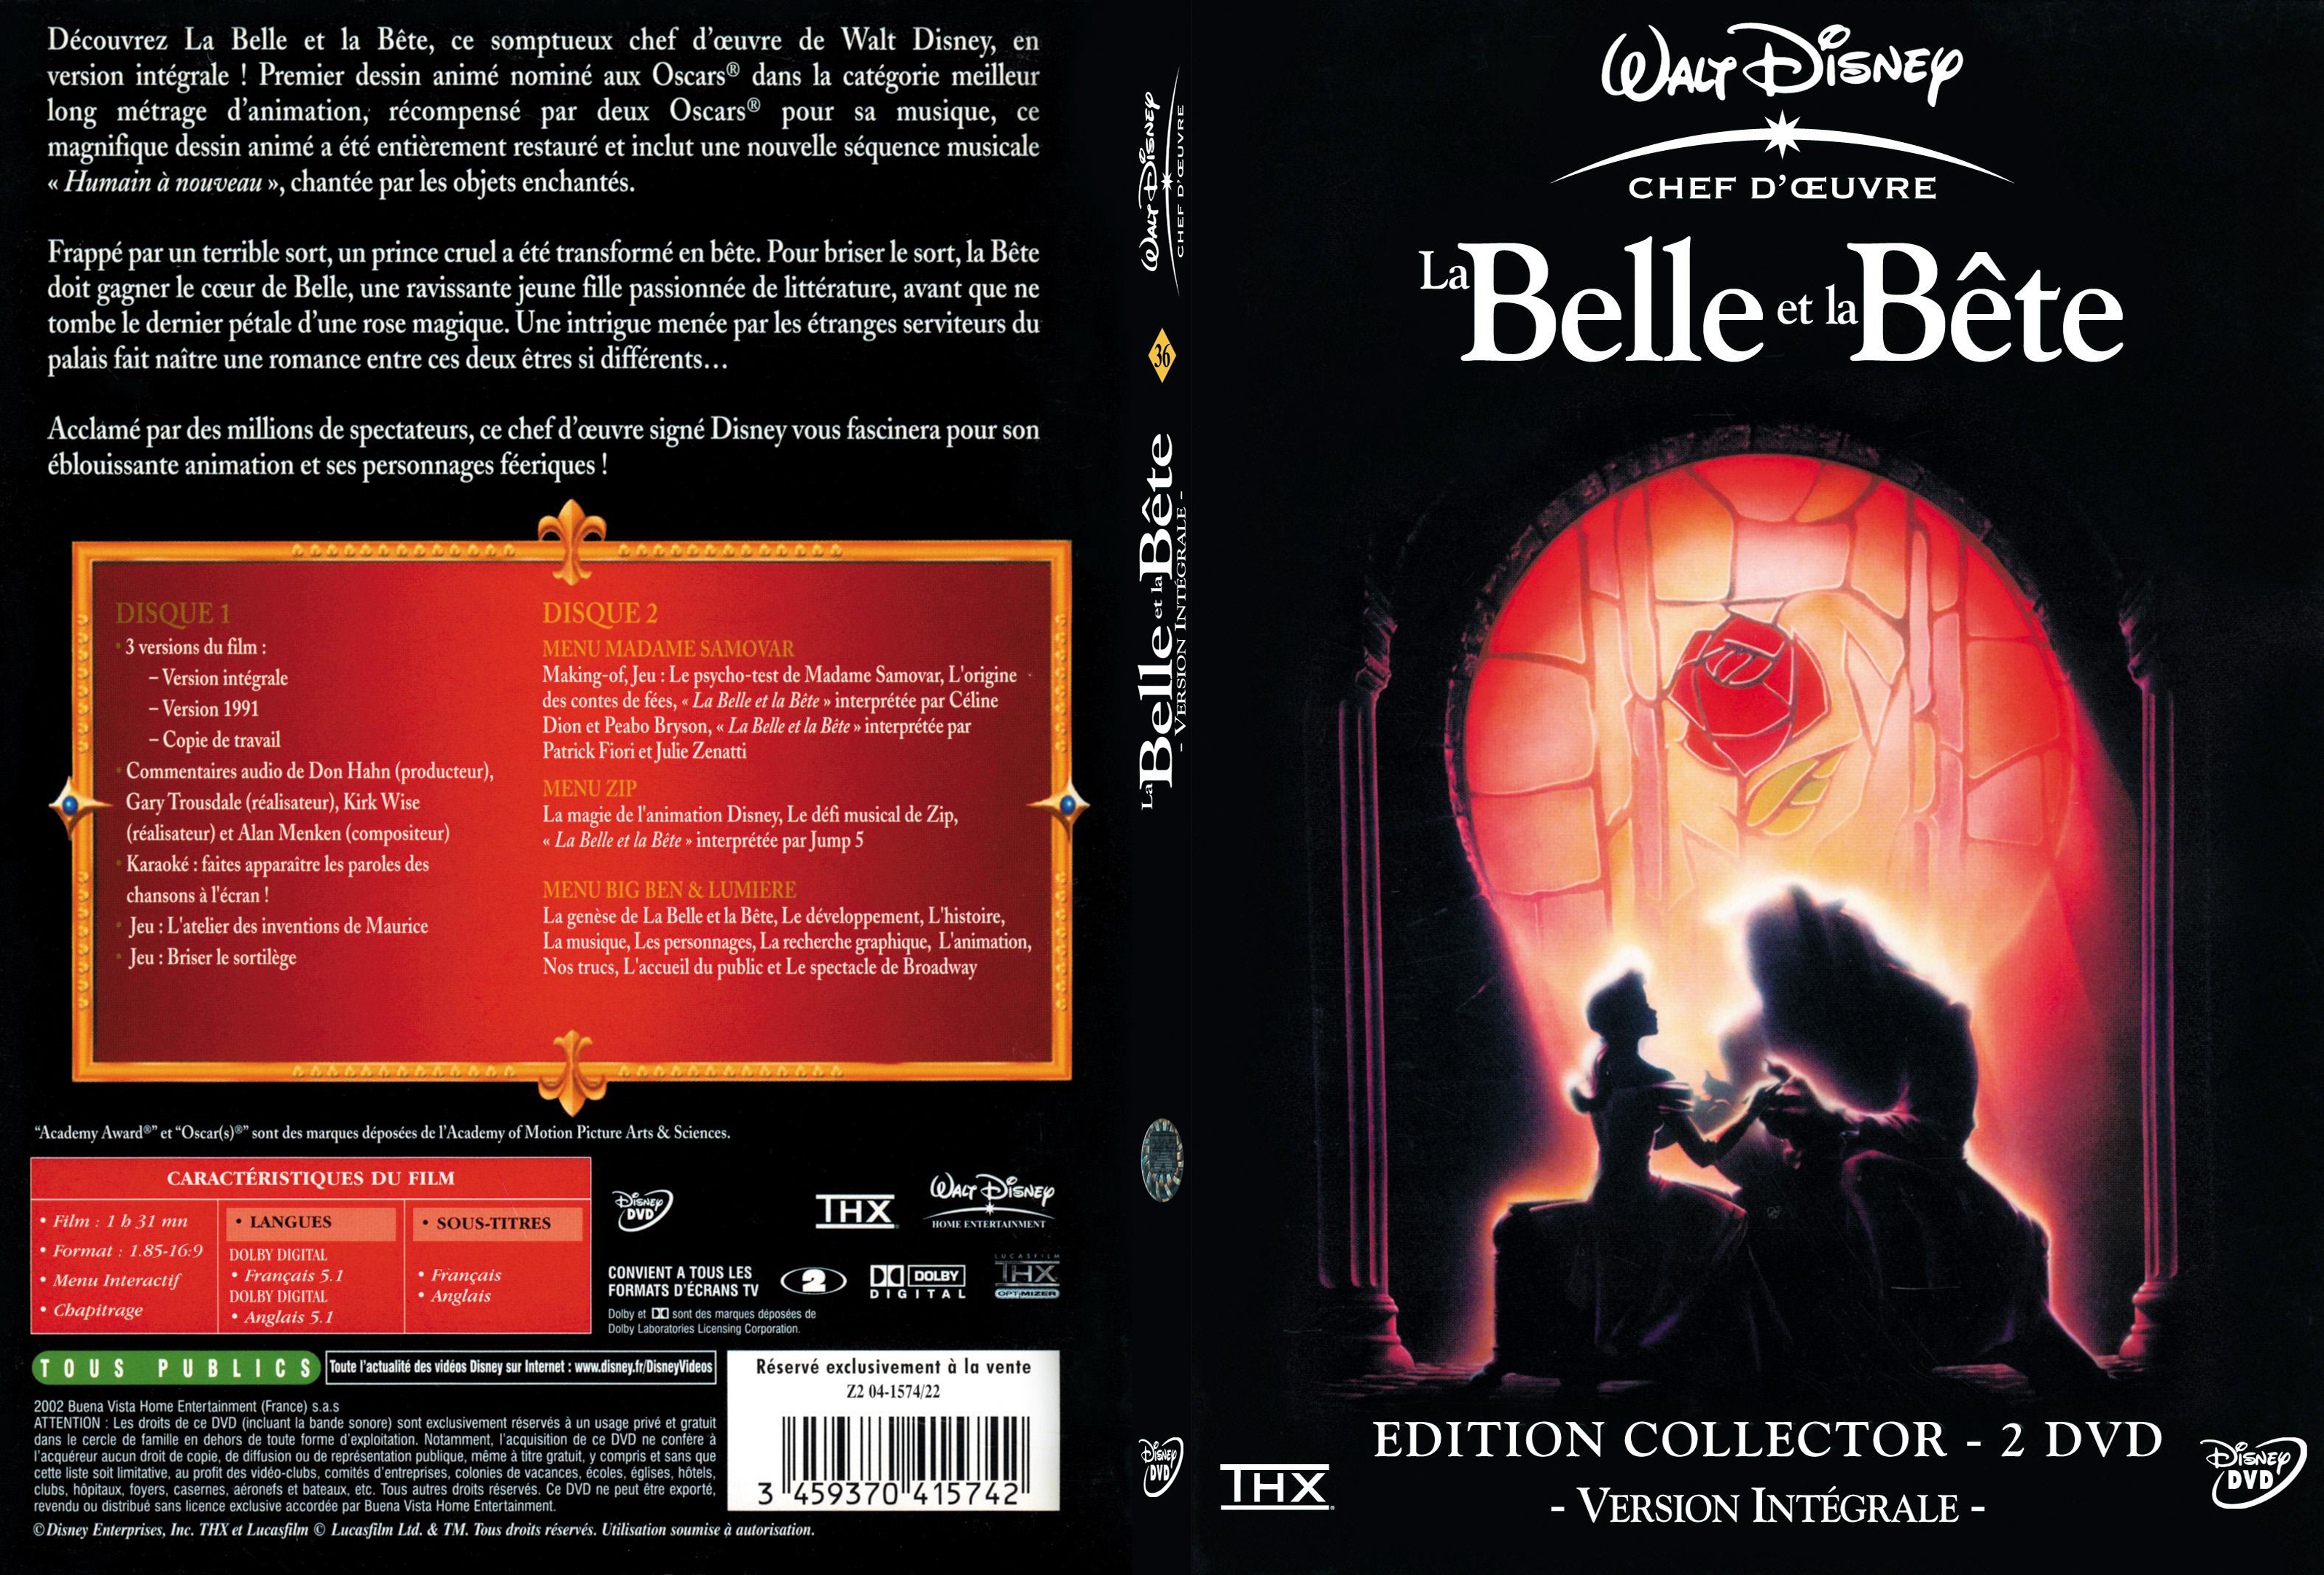 Jaquette DVD La belle et la bete - SLIM